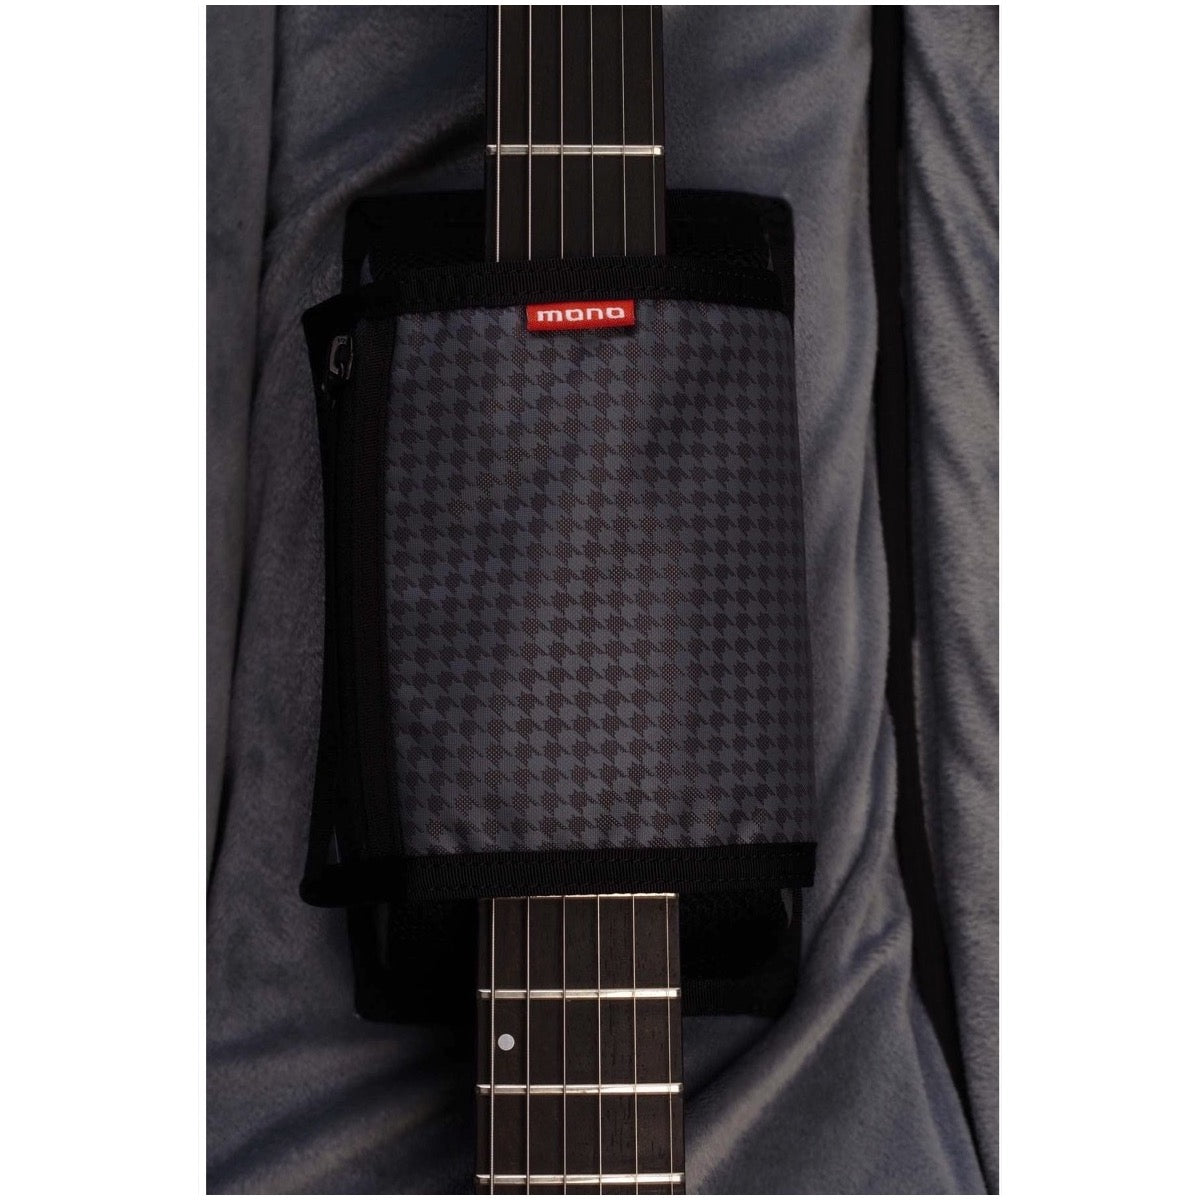 Mono M80 Dual Electric Guitar Case, Jet Black